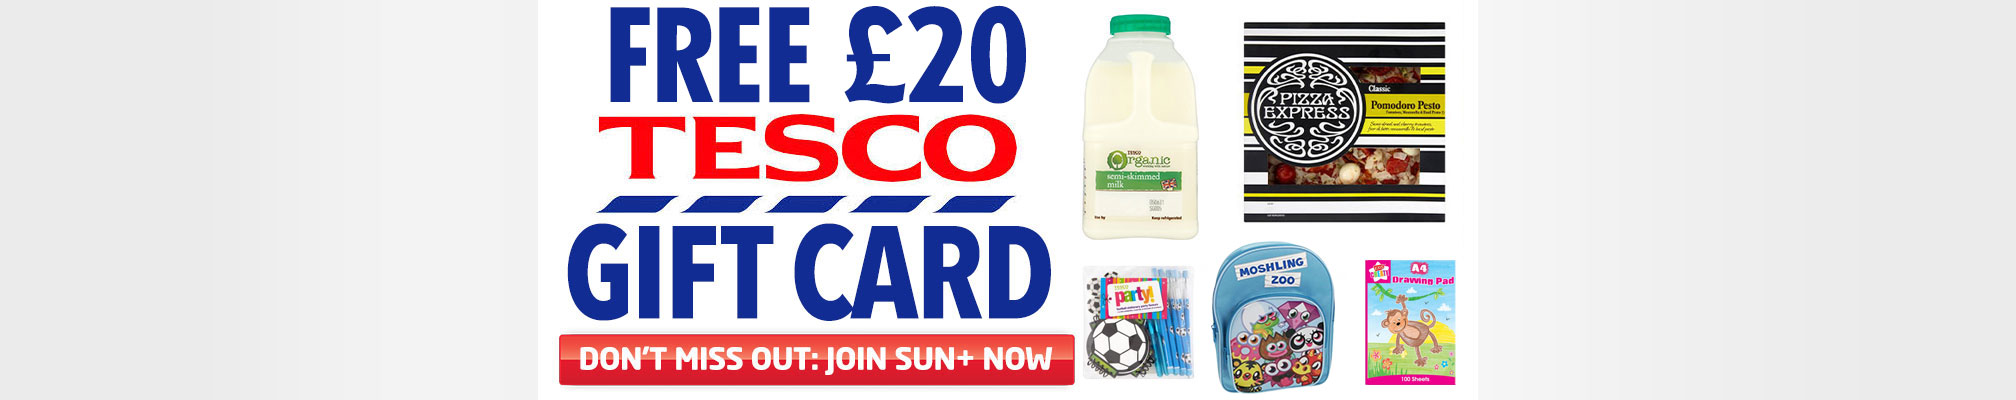 Free £20 Tesco gift card when you join Sun+